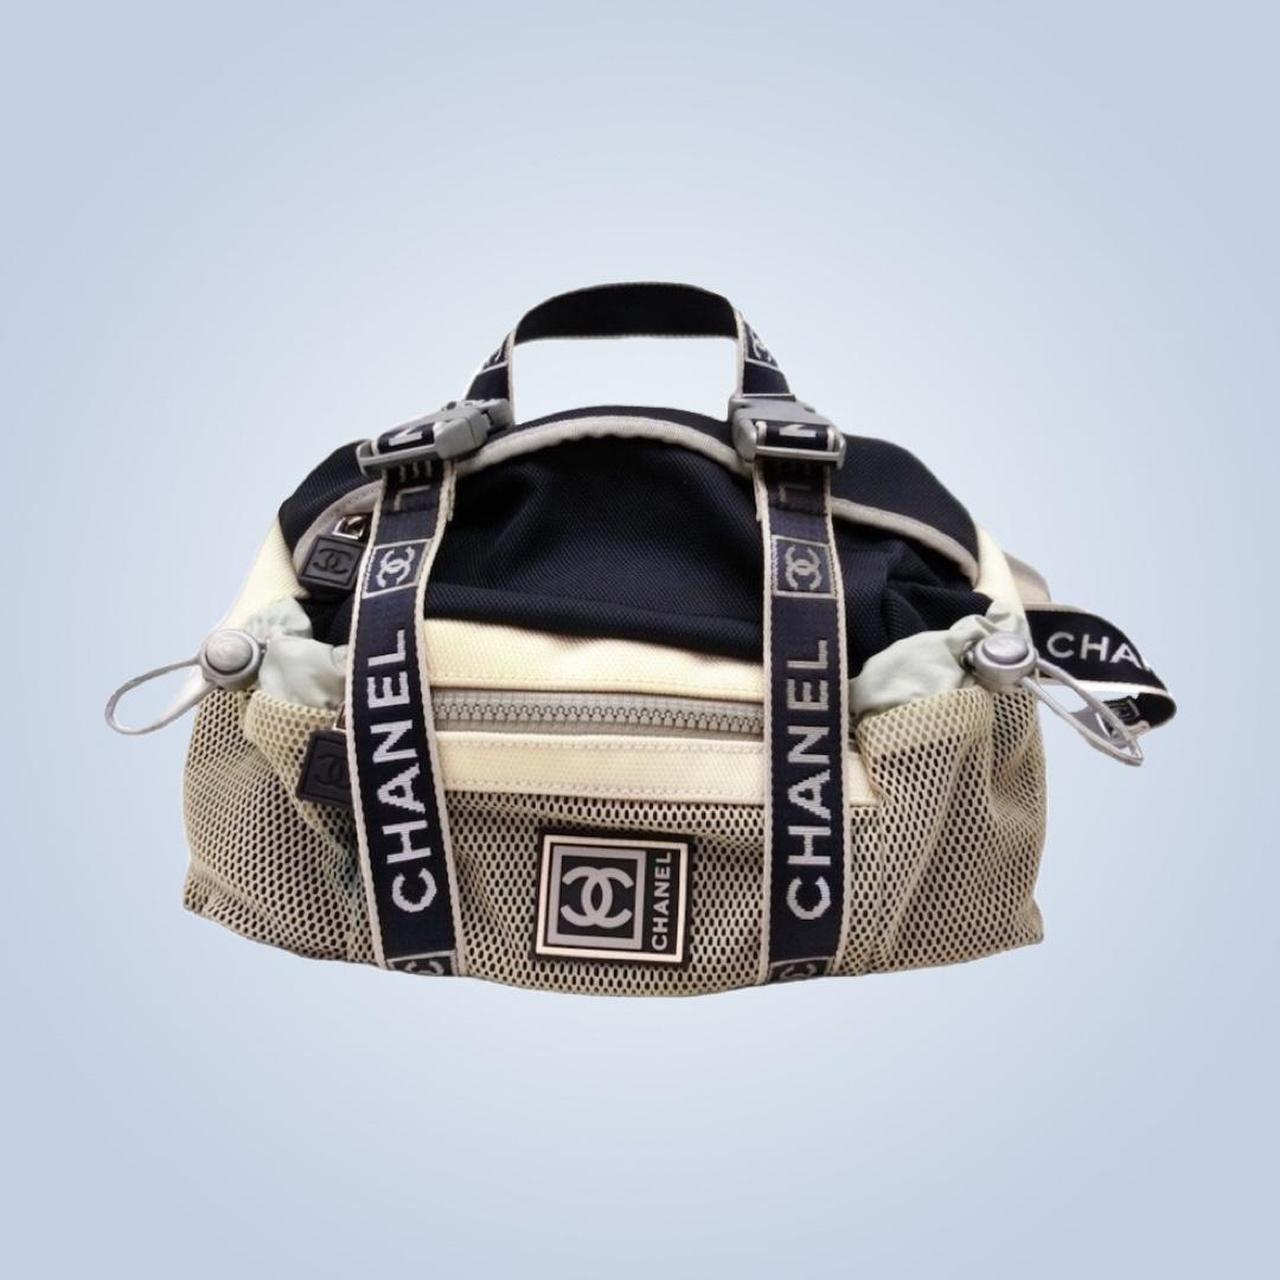 Chanel bag-s - Depop